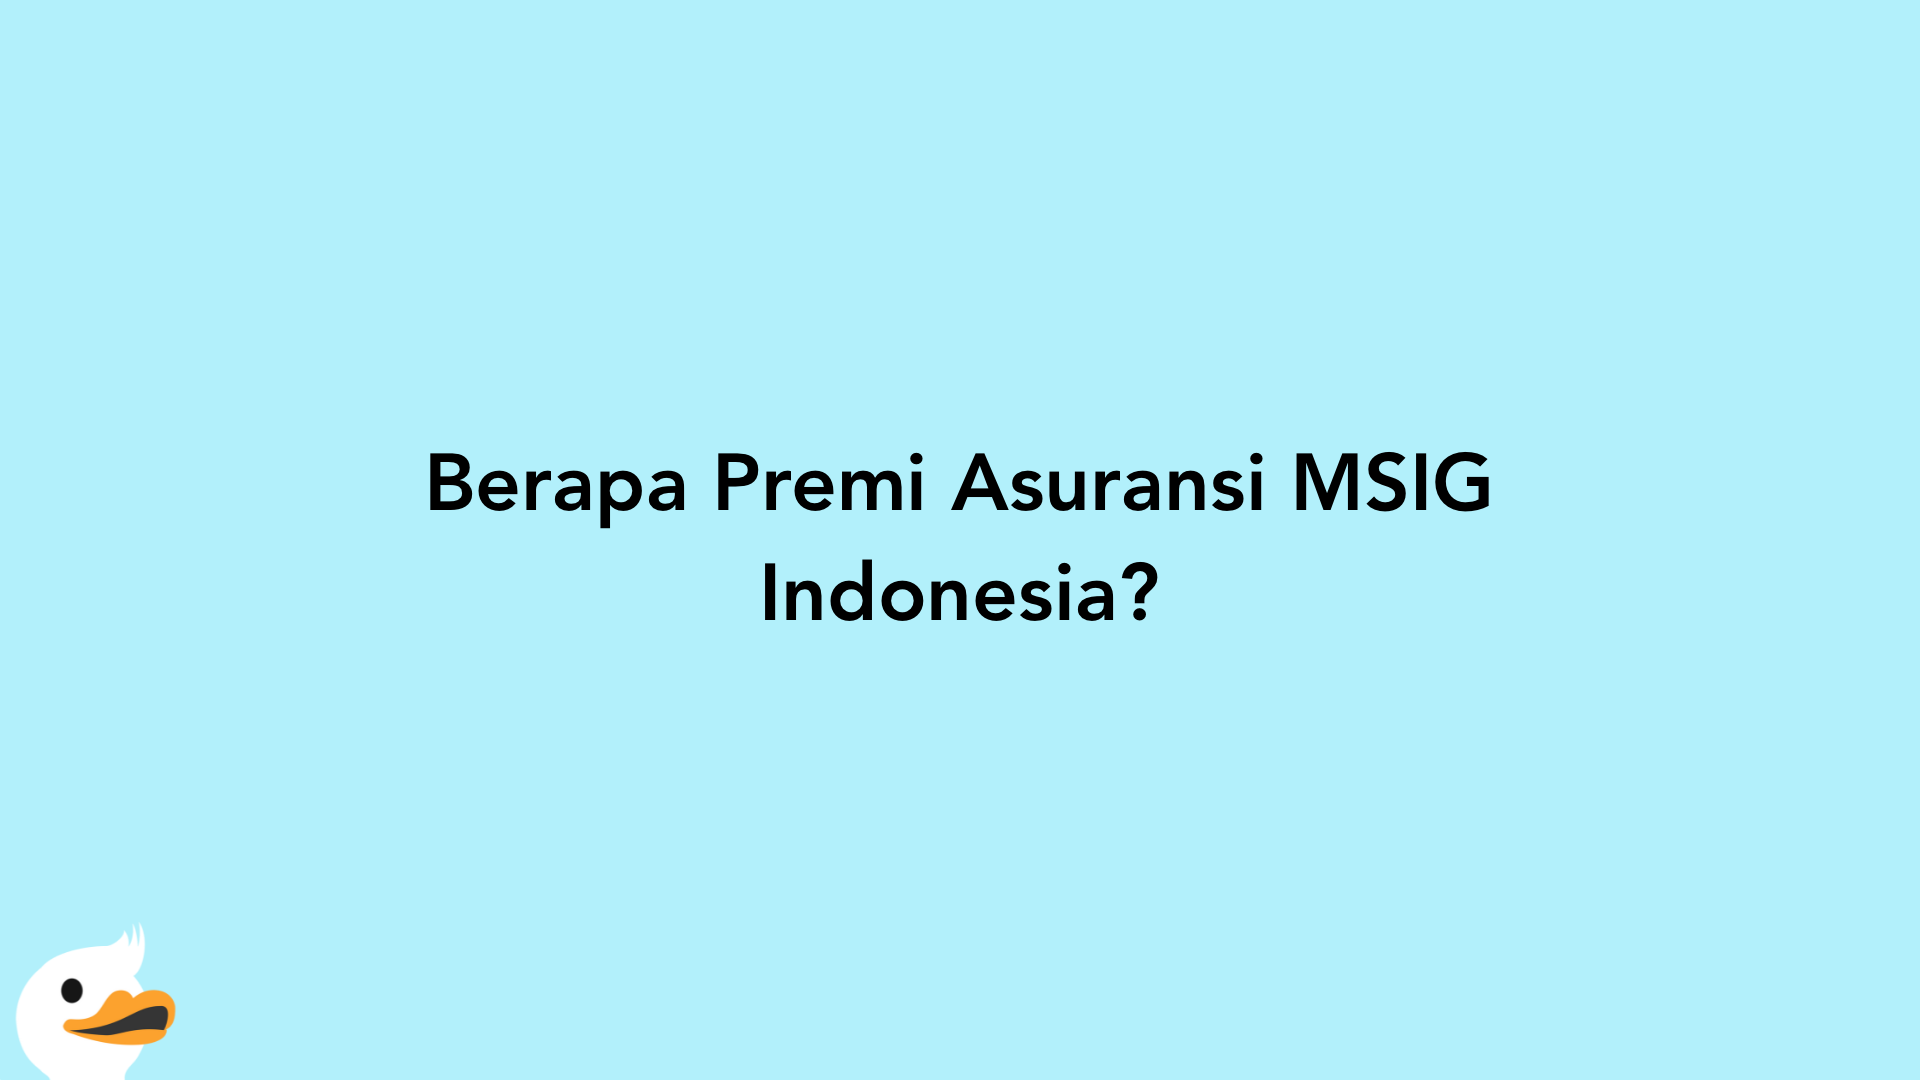 Berapa Premi Asuransi MSIG Indonesia?